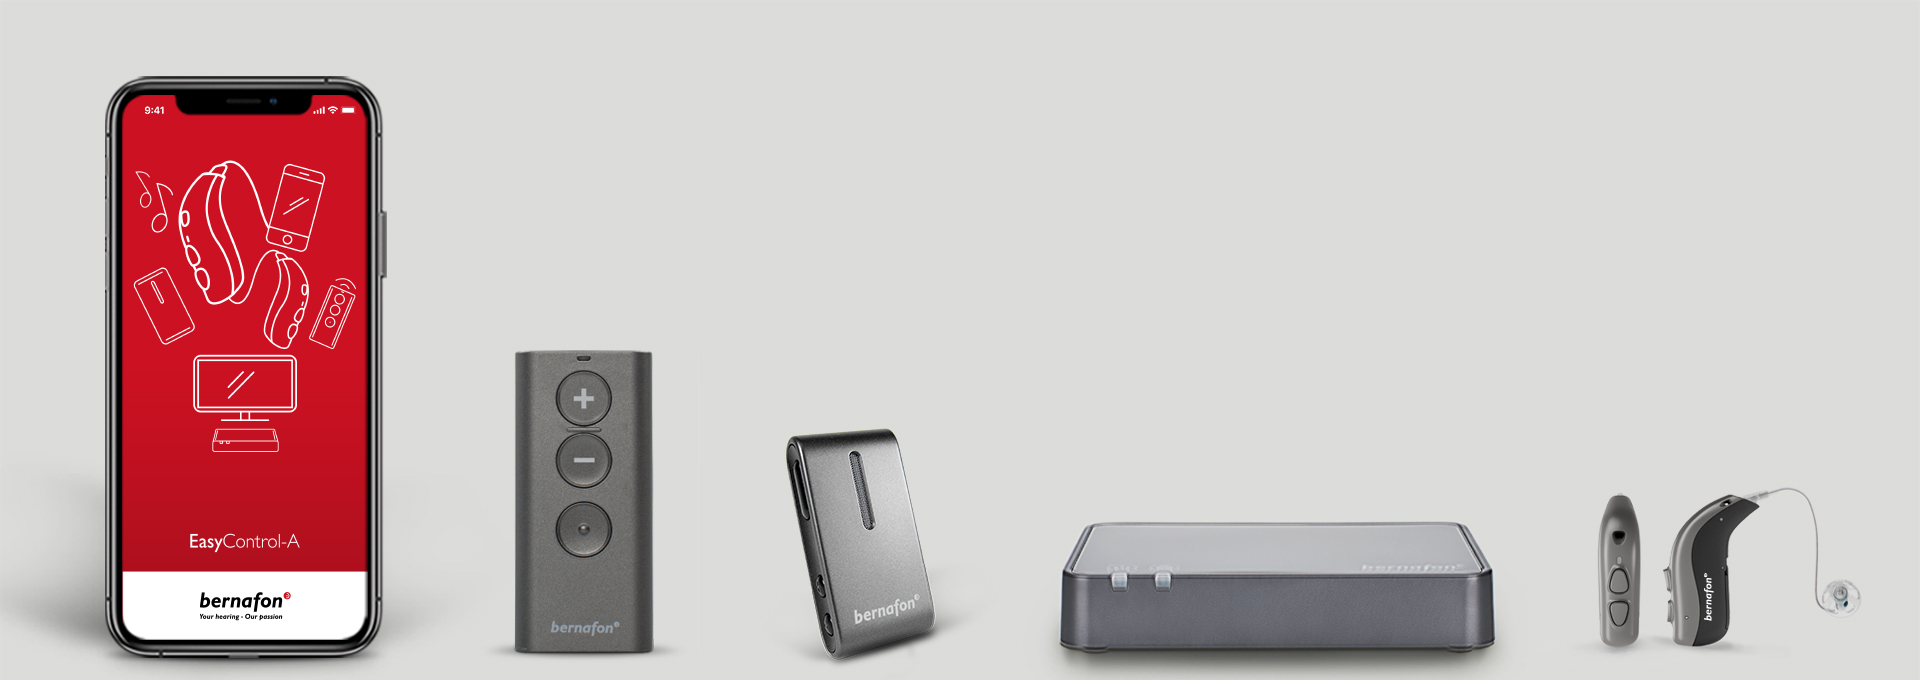 Les accessoires Bernafon sont exposés, notamment l'application Bernafon sur smartphone, l'adaptateur TV, la télécommande, les appareils auditifs et le Soundclip-A.